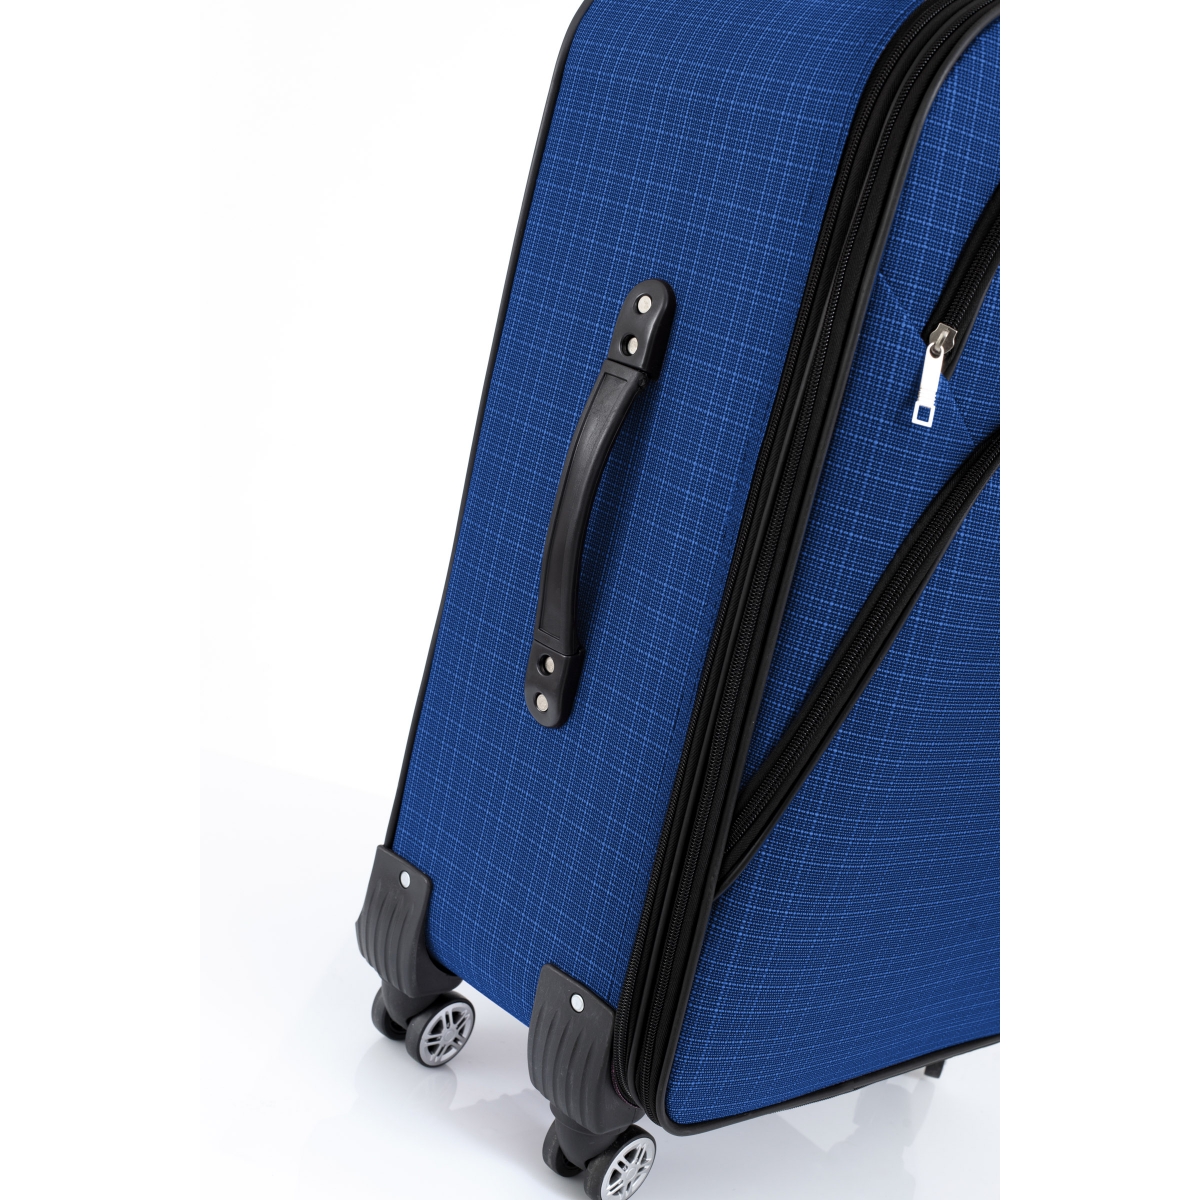 Gedox 4 Teker Geniş Kasa Havlu Kumaş 3'lü Valiz Seyahat Seti - Model: 1000.05 Çivit Mavi